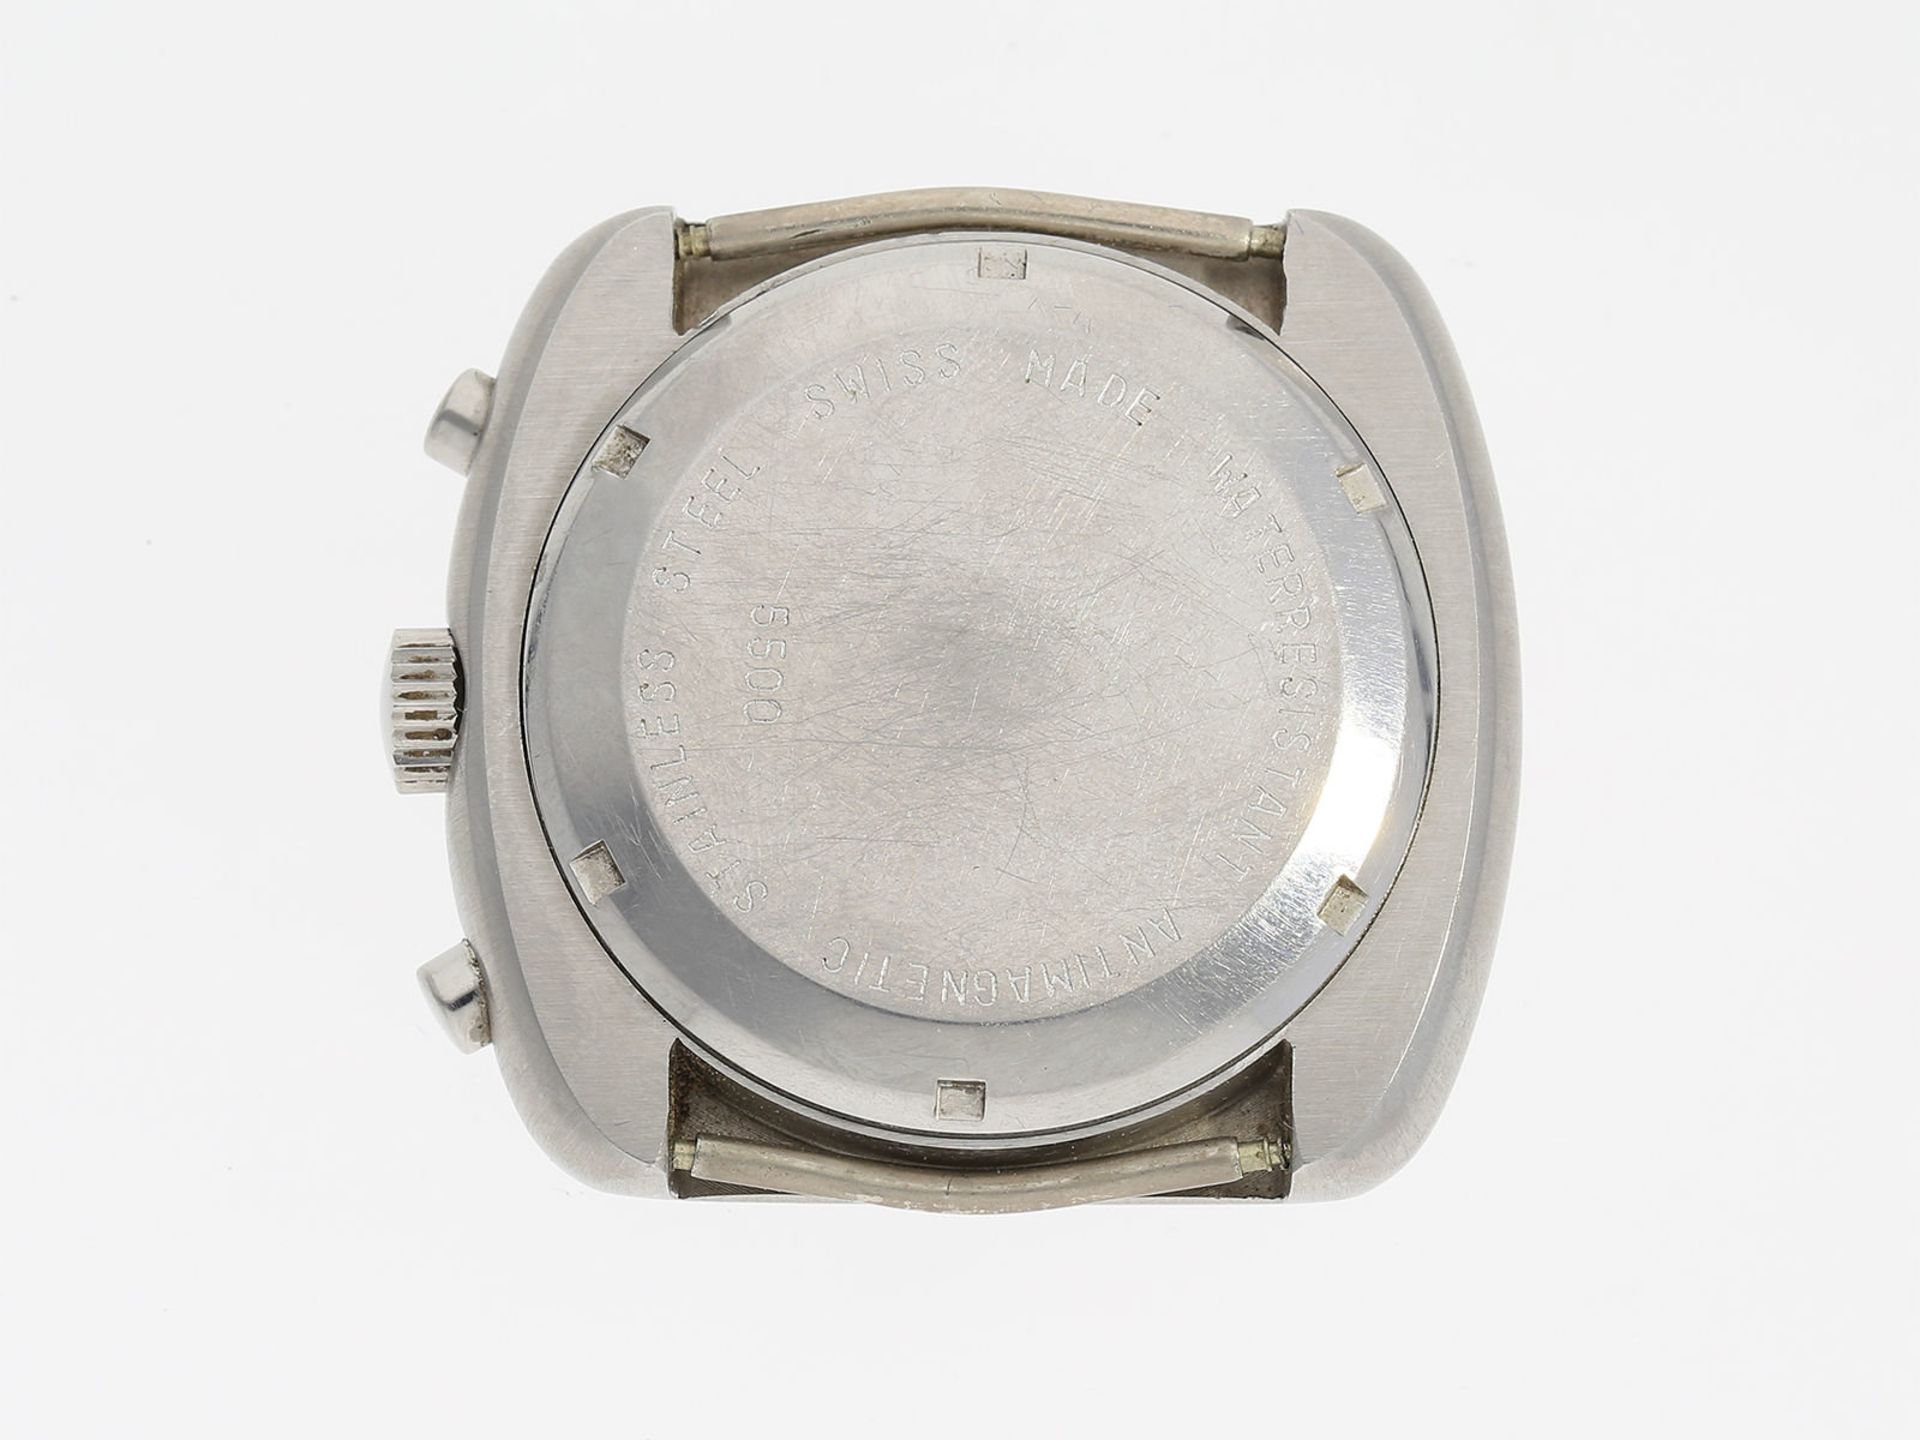 Armbanduhr: ausgefallener Edelstahl-Chronograph der Marke Revue, Automatik, ca. 1970Ca. 39x42mm, - Bild 2 aus 3